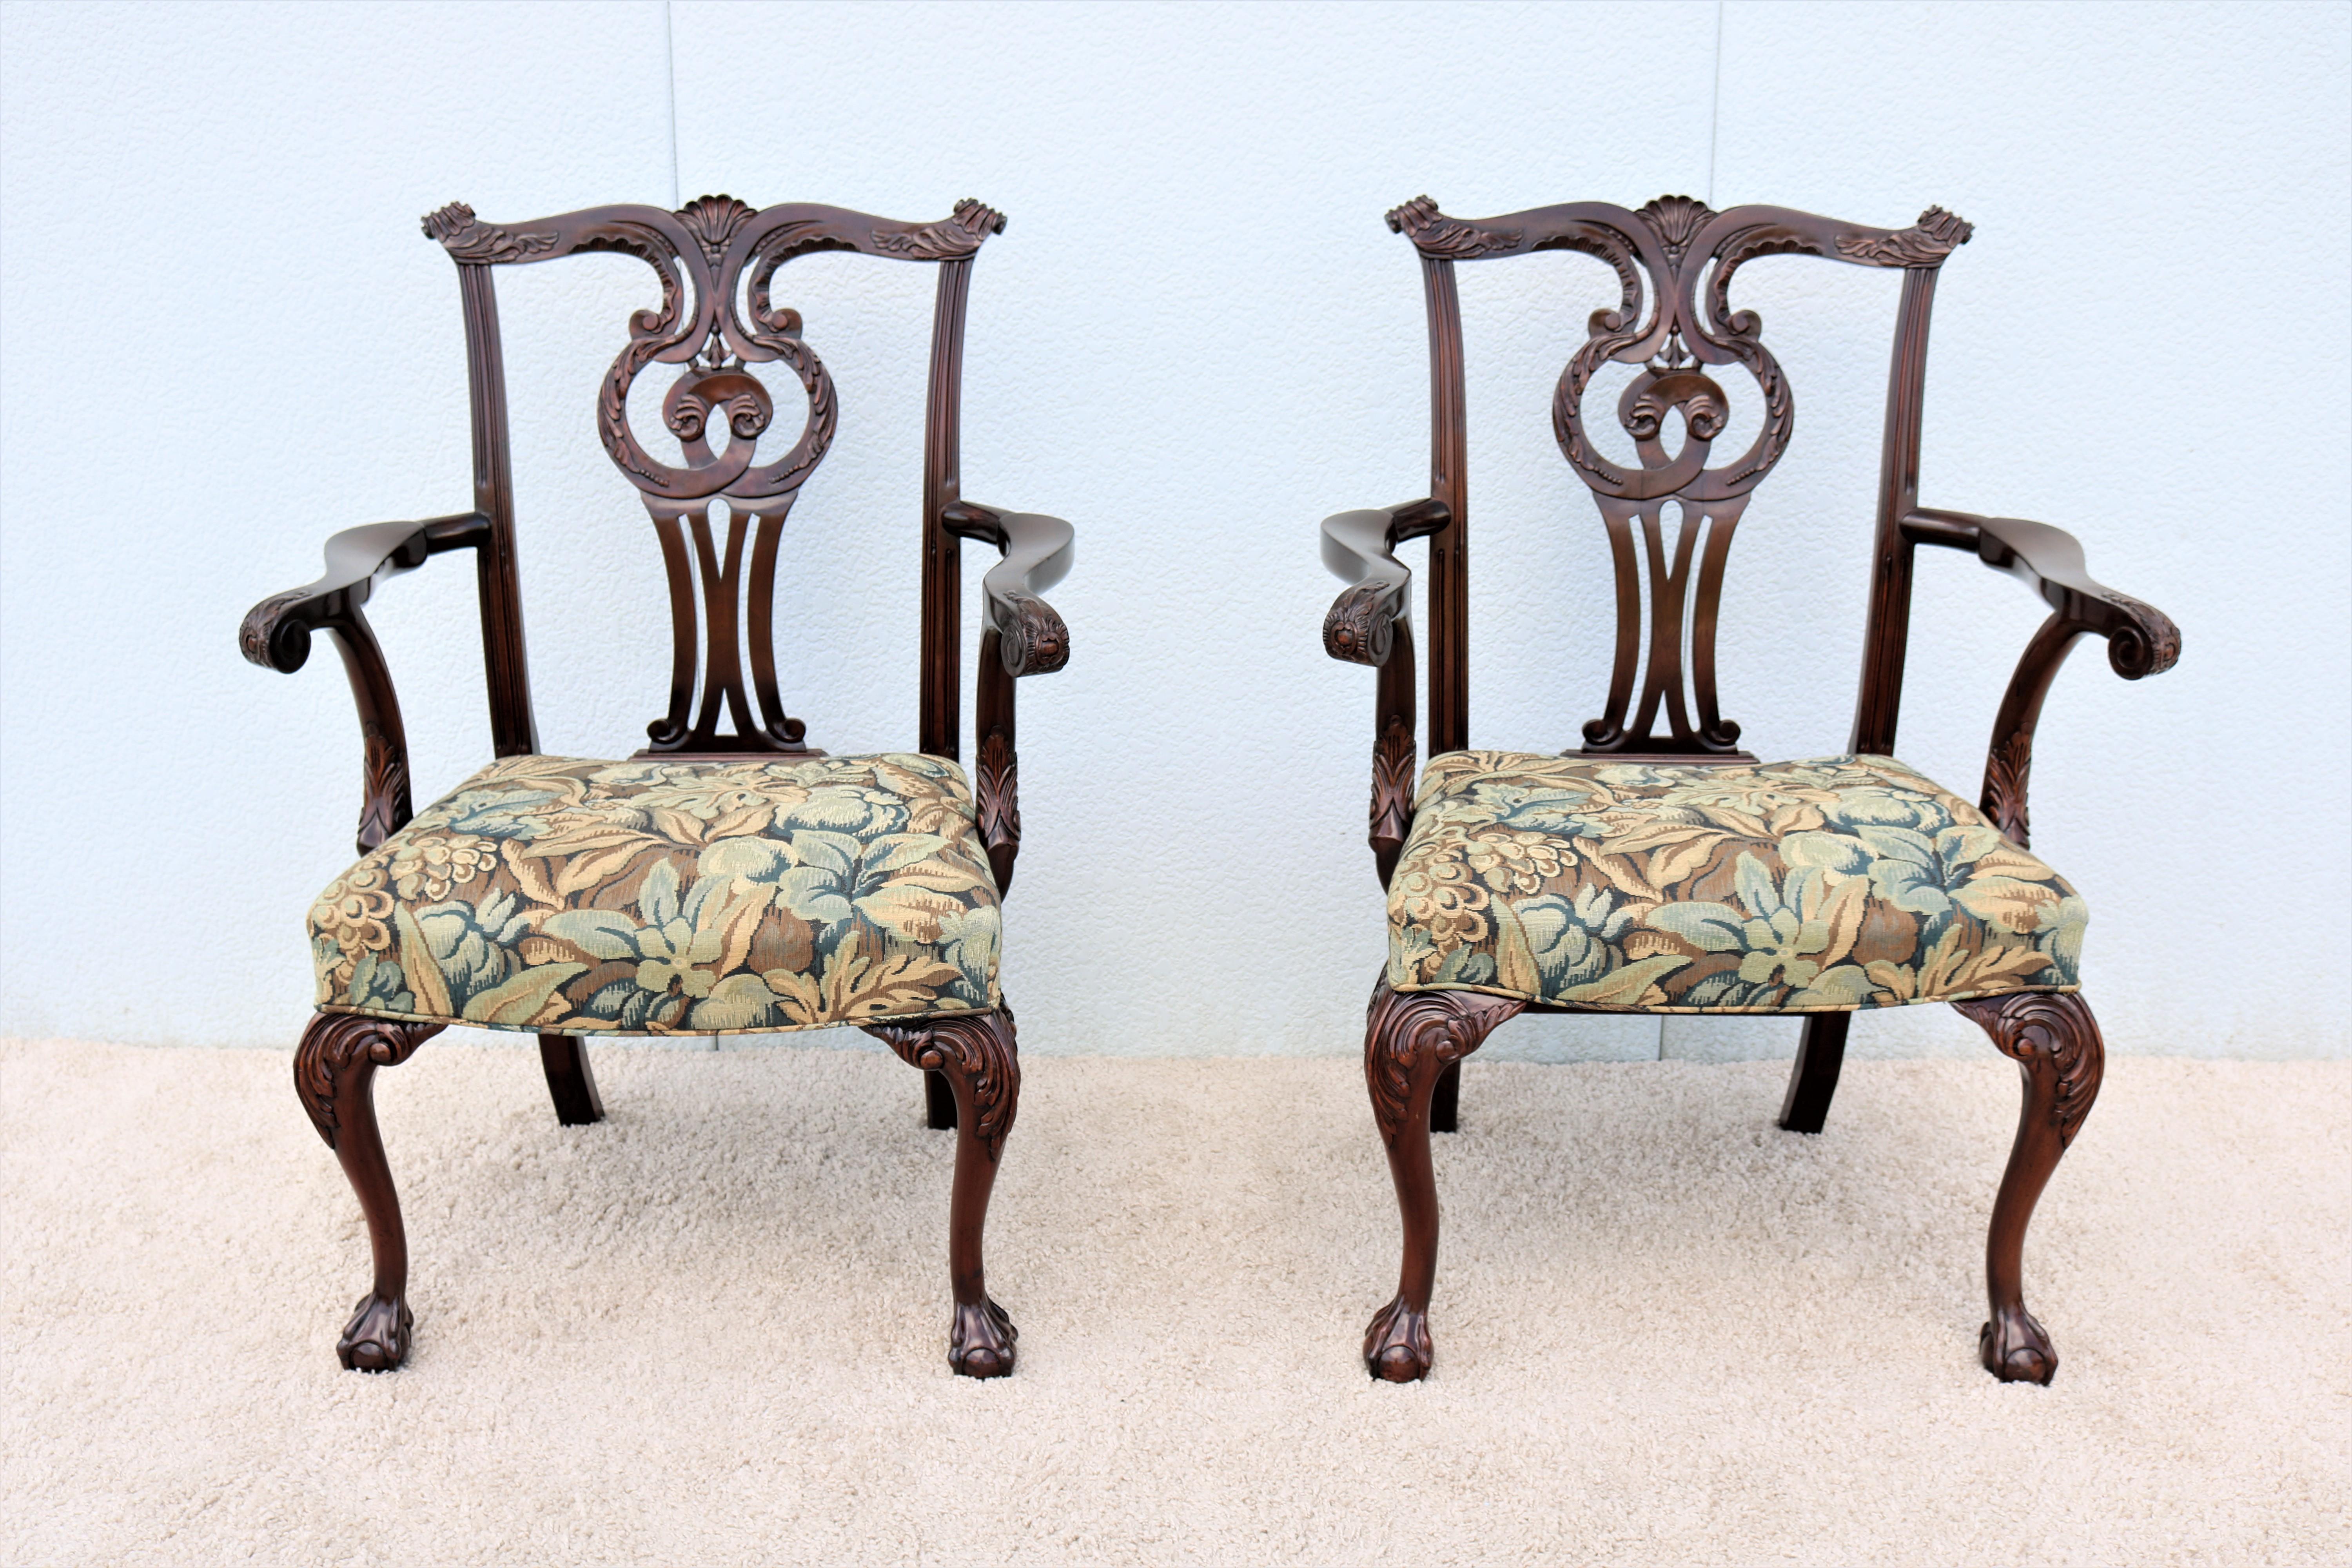 Ces fabuleux fauteuils ouverts traditionnels classiques de Chippendale sont exceptionnellement conçus et fabriqués à la main dans le style de Thomas Chippendale, vers 1760.
Noyer sculpté à la main par des artisans qualifiés utilisant des matériaux